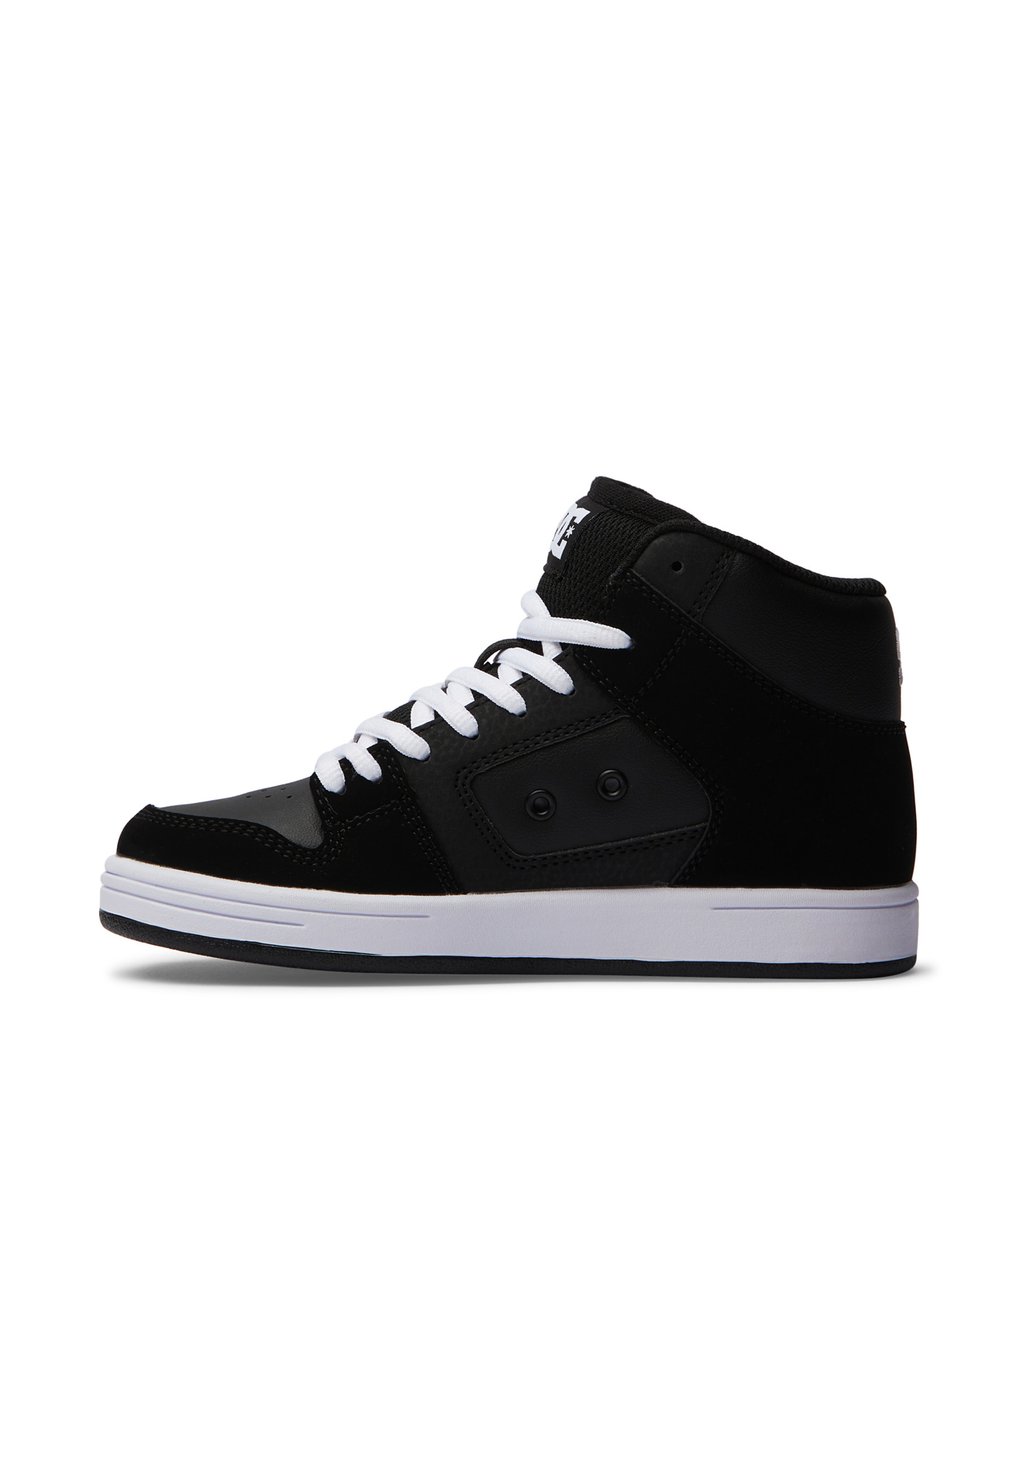 Кроссовки высокие MANTECA 4 HI DC Shoes, цвет black/black/white